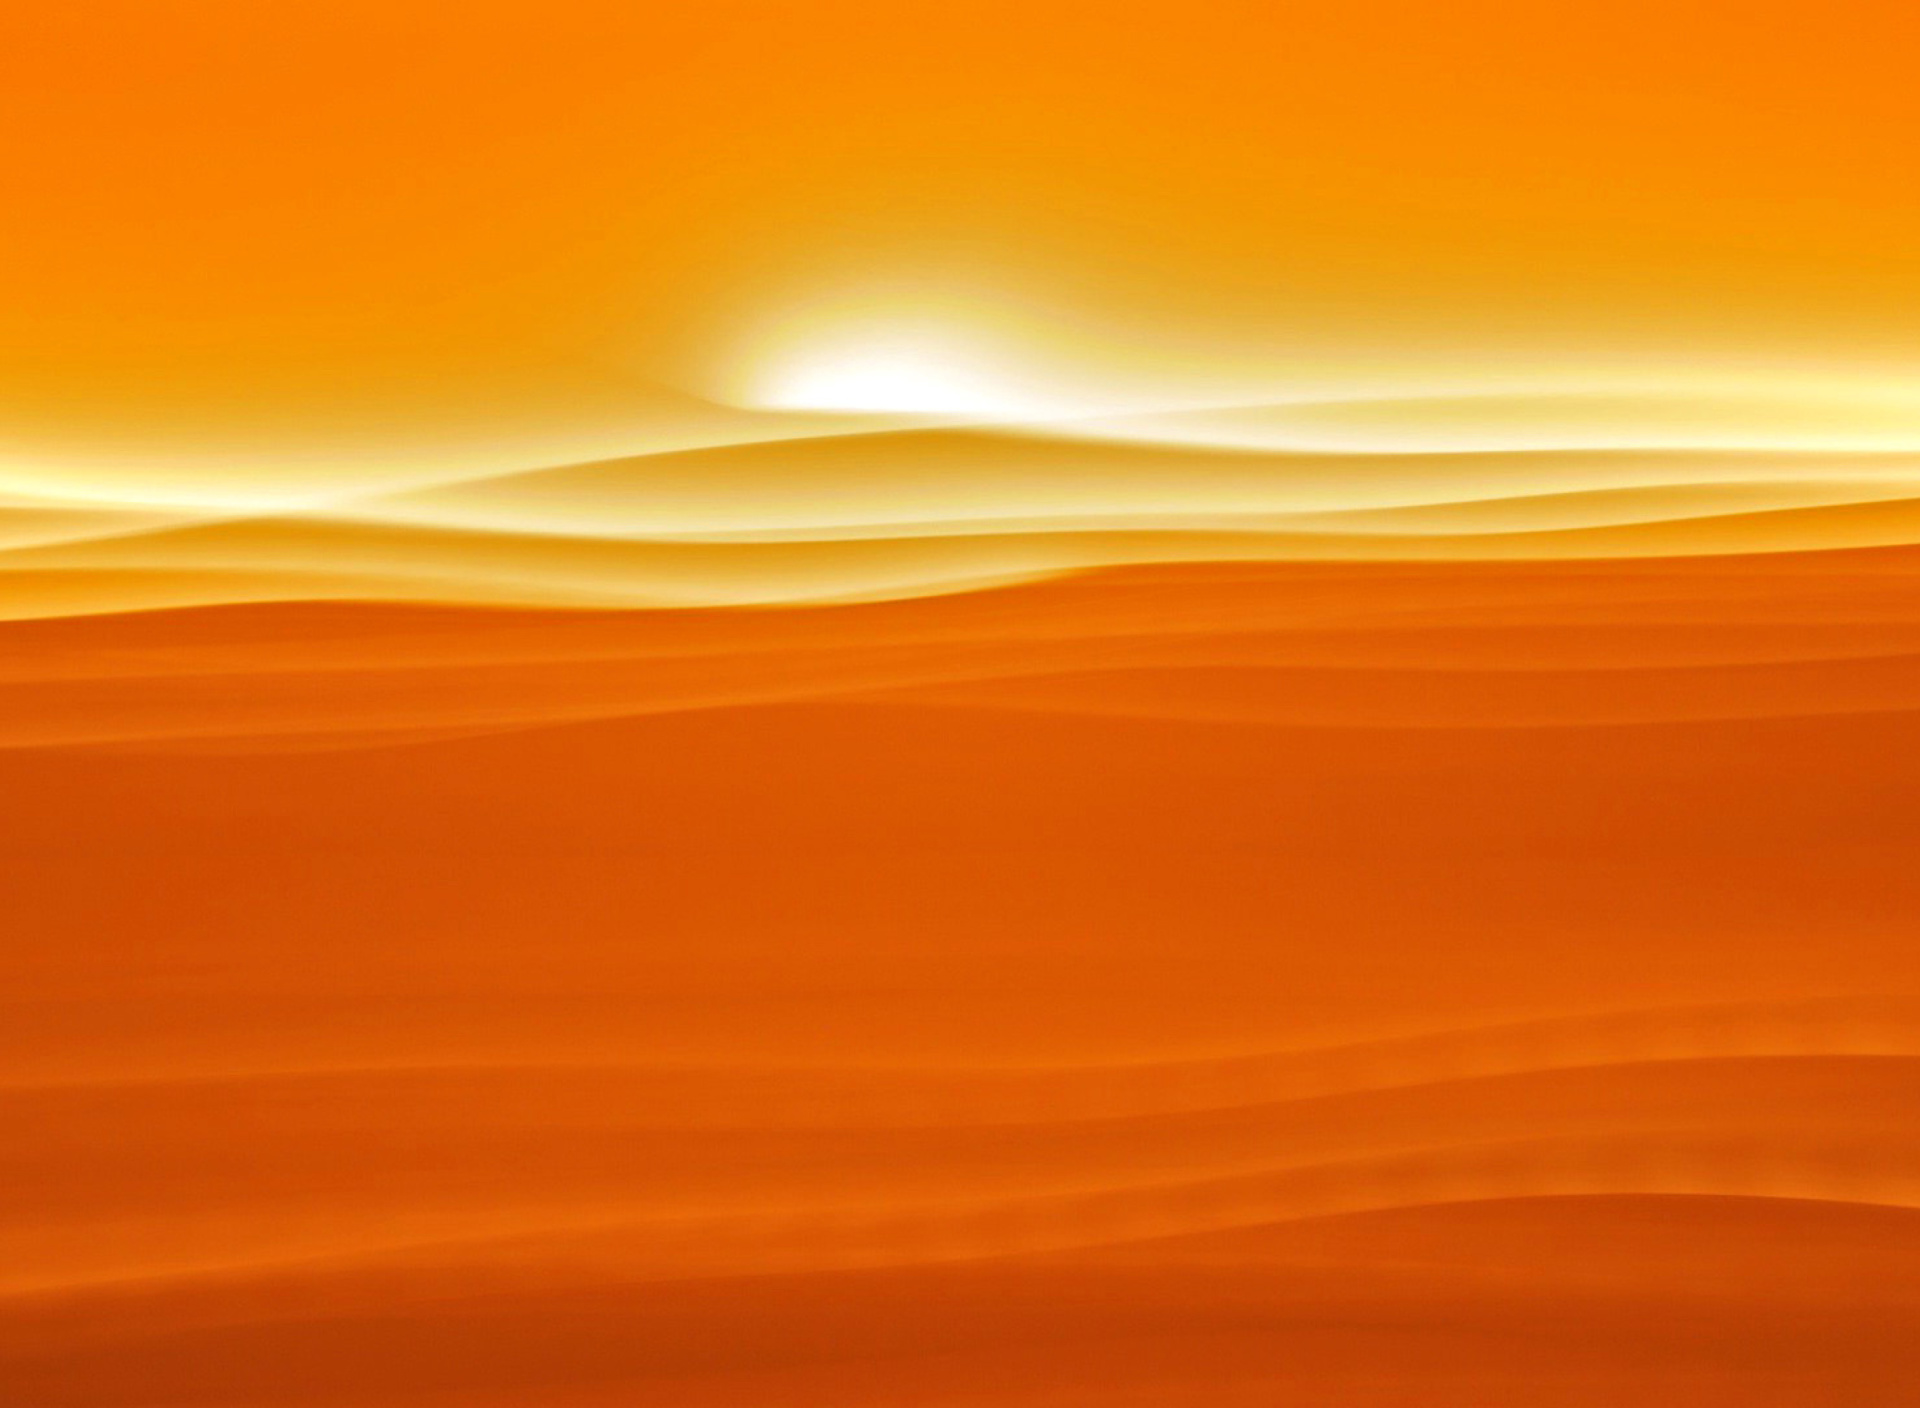 Orange Sky and Desert wallpaper 1920x1408